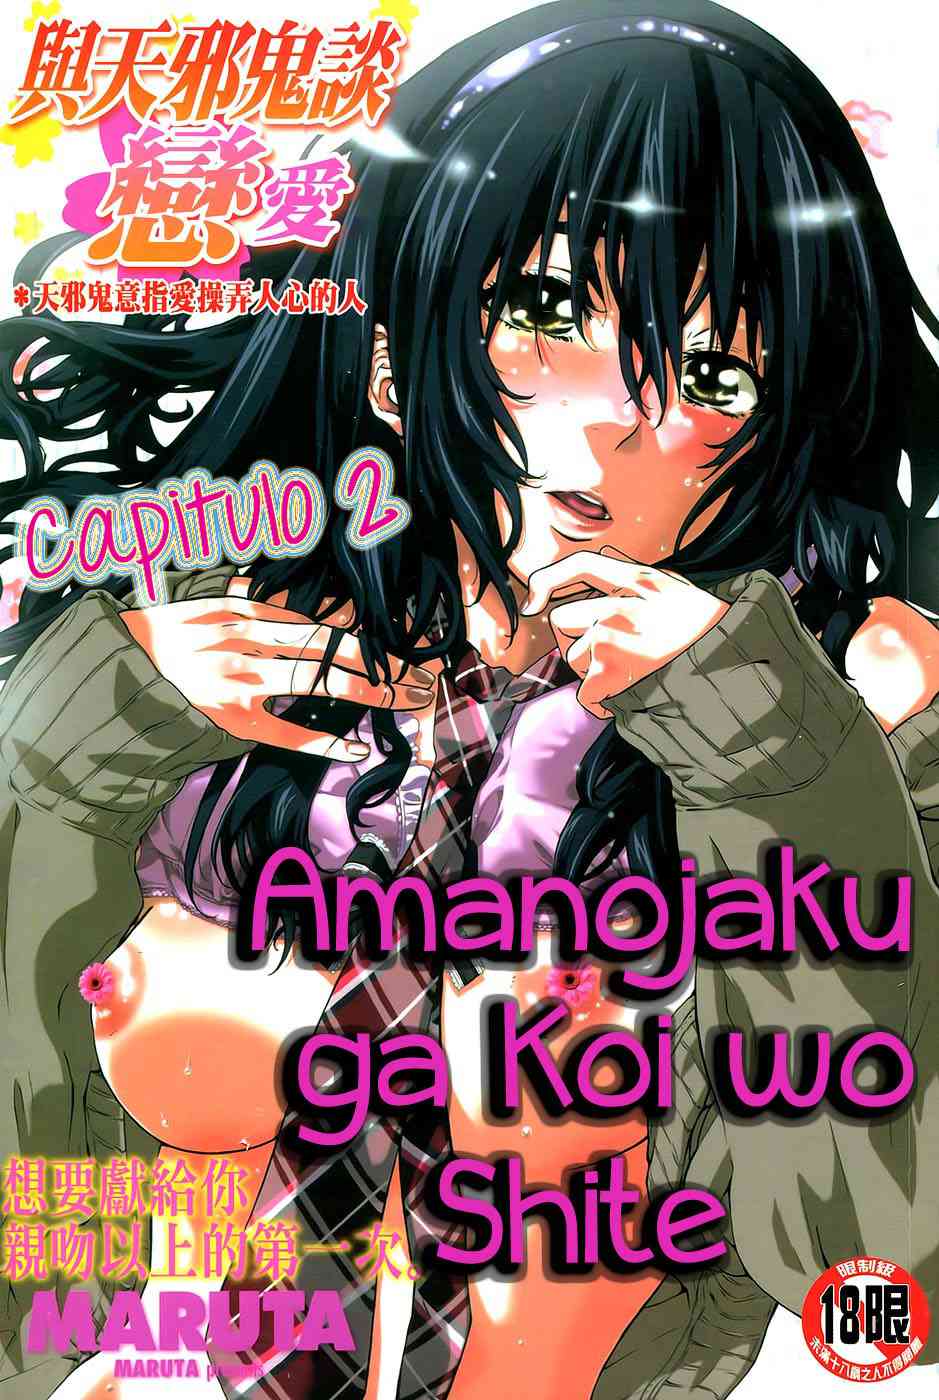 Amanojaku ga koi wo shite Chapter-2 - 0